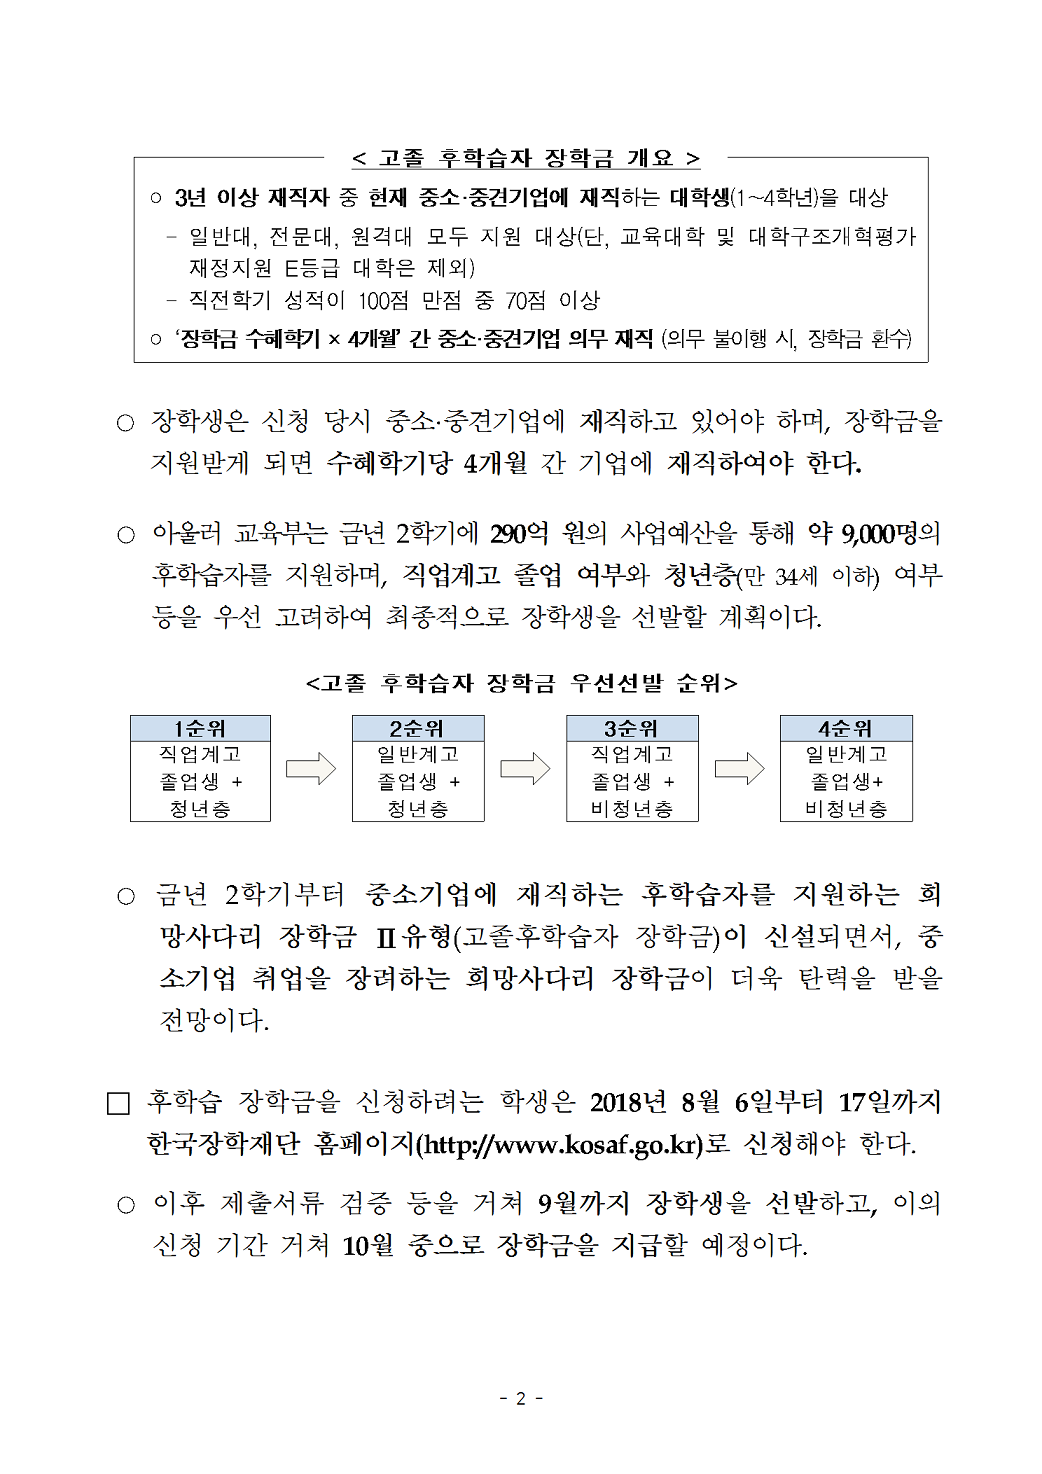 07-31(화)[보도자료] 고졸 후학습자 장학금(희망사다리Ⅱ 유형)002.png